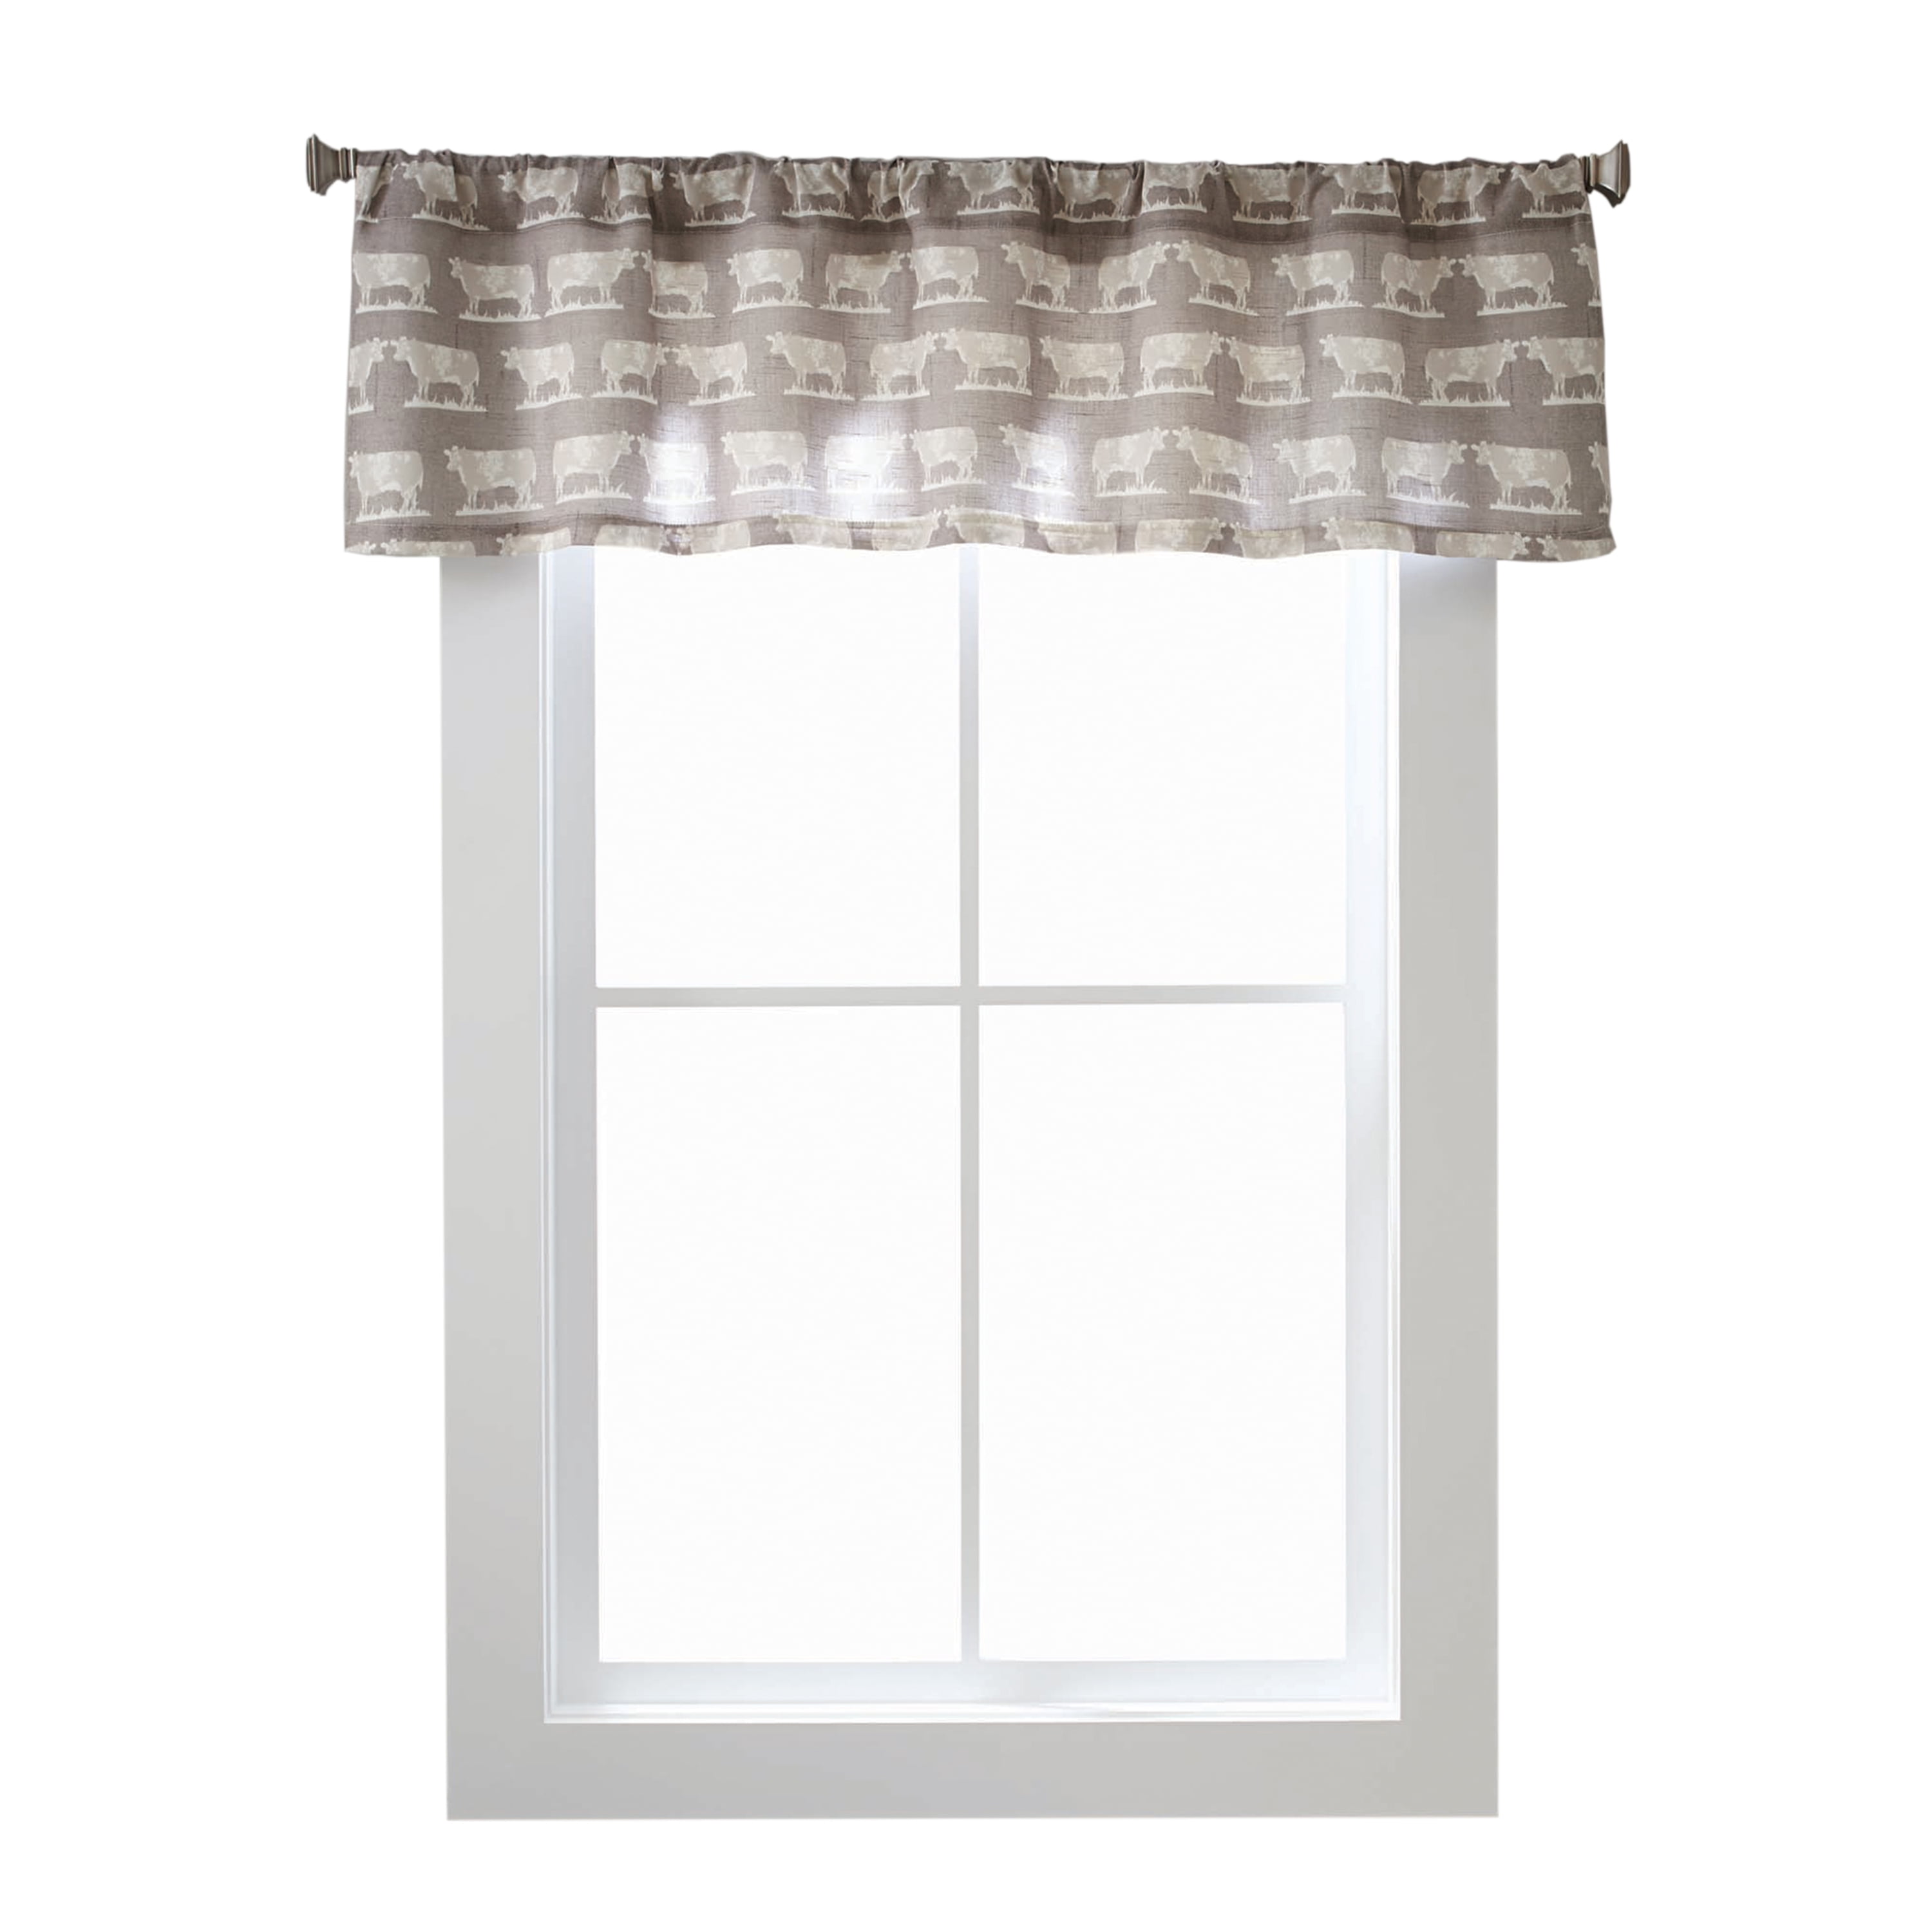 No 918 Blair Farmhouse Plaid Semi-Sheer Tab Top Kitchen Curtain Valance Charcoal/Ecru Off-White 52 x 14